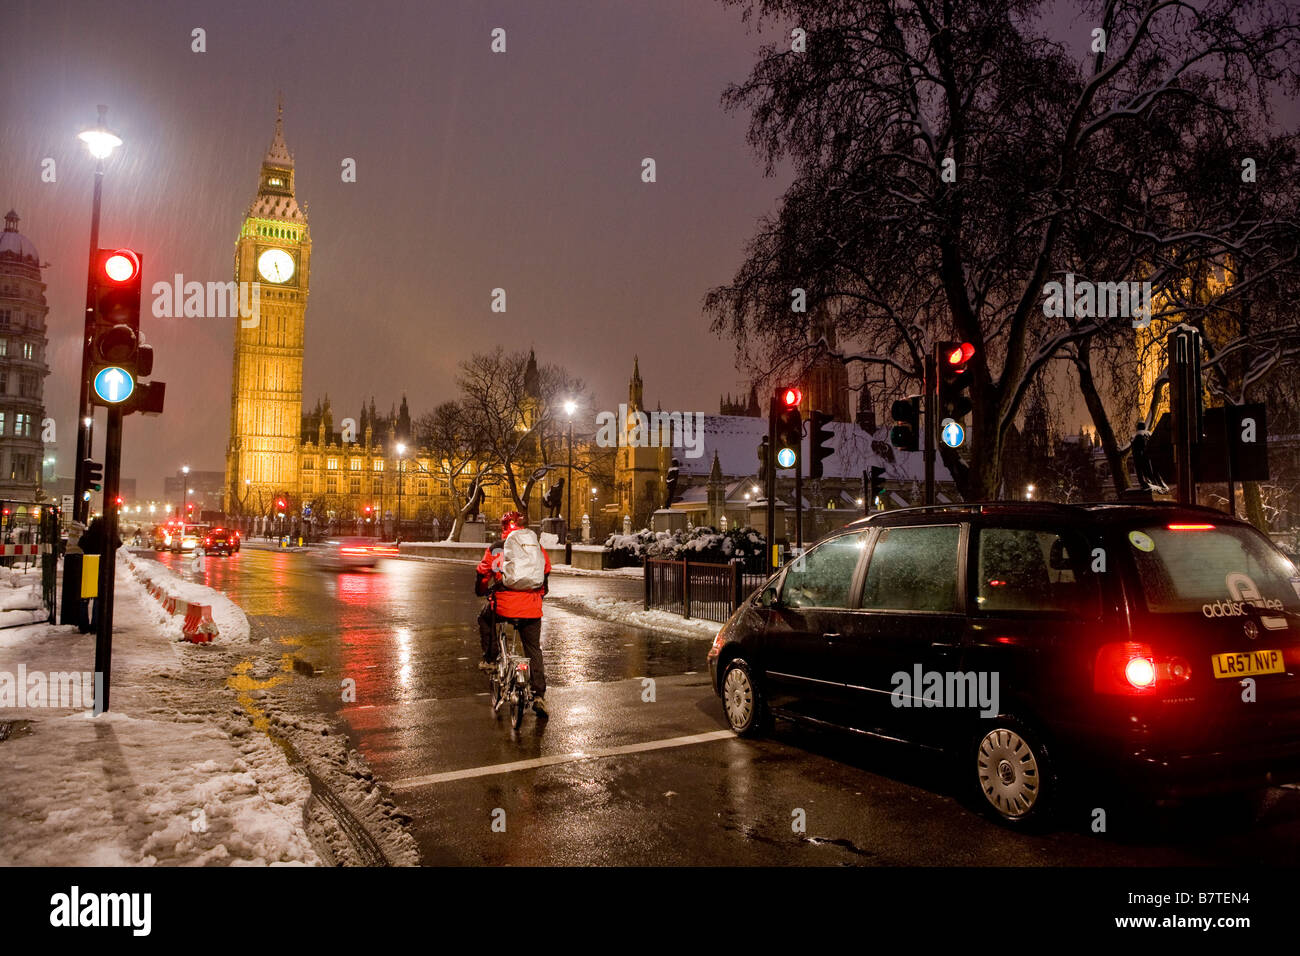 Sulle vetture di un inverno nevoso notte Parliament Square Londra Regno Unito Europa Foto Stock